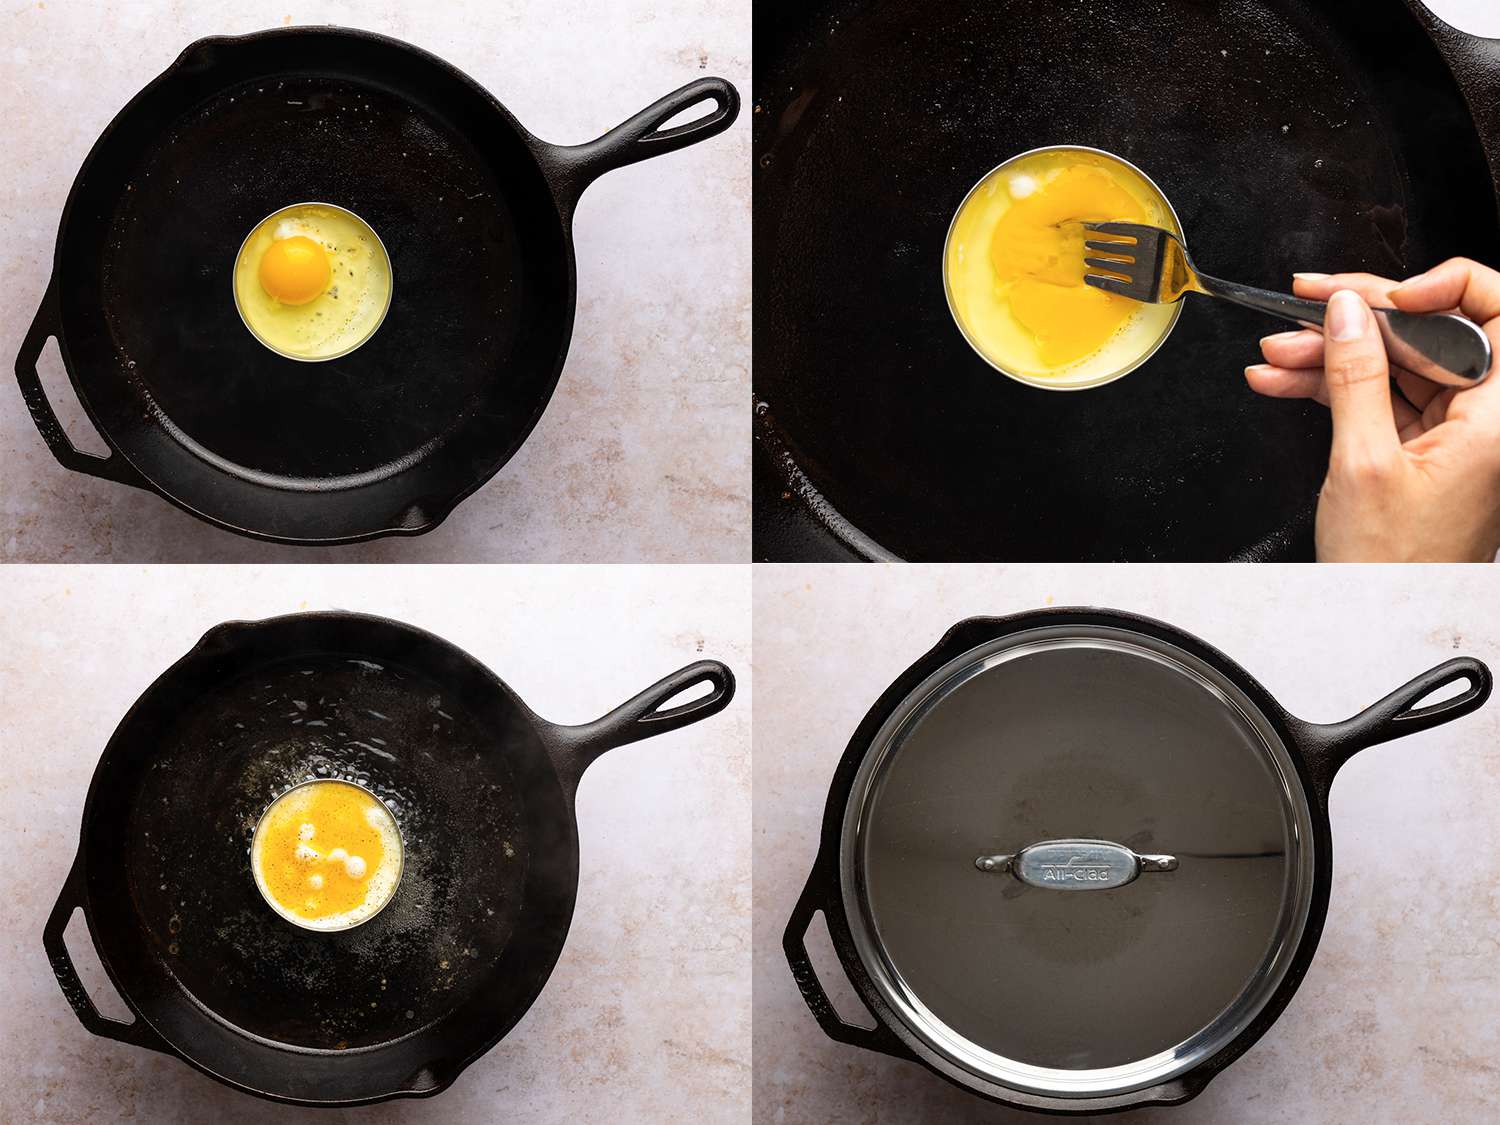 四幅拼贴画展示了烹饪鸡蛋的过程。左上角的图片展示了一个生鸡蛋放在一个铸铁煎锅的圆瓶盖里。右上方的图片显示，蛋黄是用手拿着的金属叉子打碎的。左下方的图片显示的是稍微煮熟的鸡蛋，右下方的图片显示的是锅上盖着一个金属盖子，这将有助于夹住鸡蛋的头部，从而完成鸡蛋的烹饪。